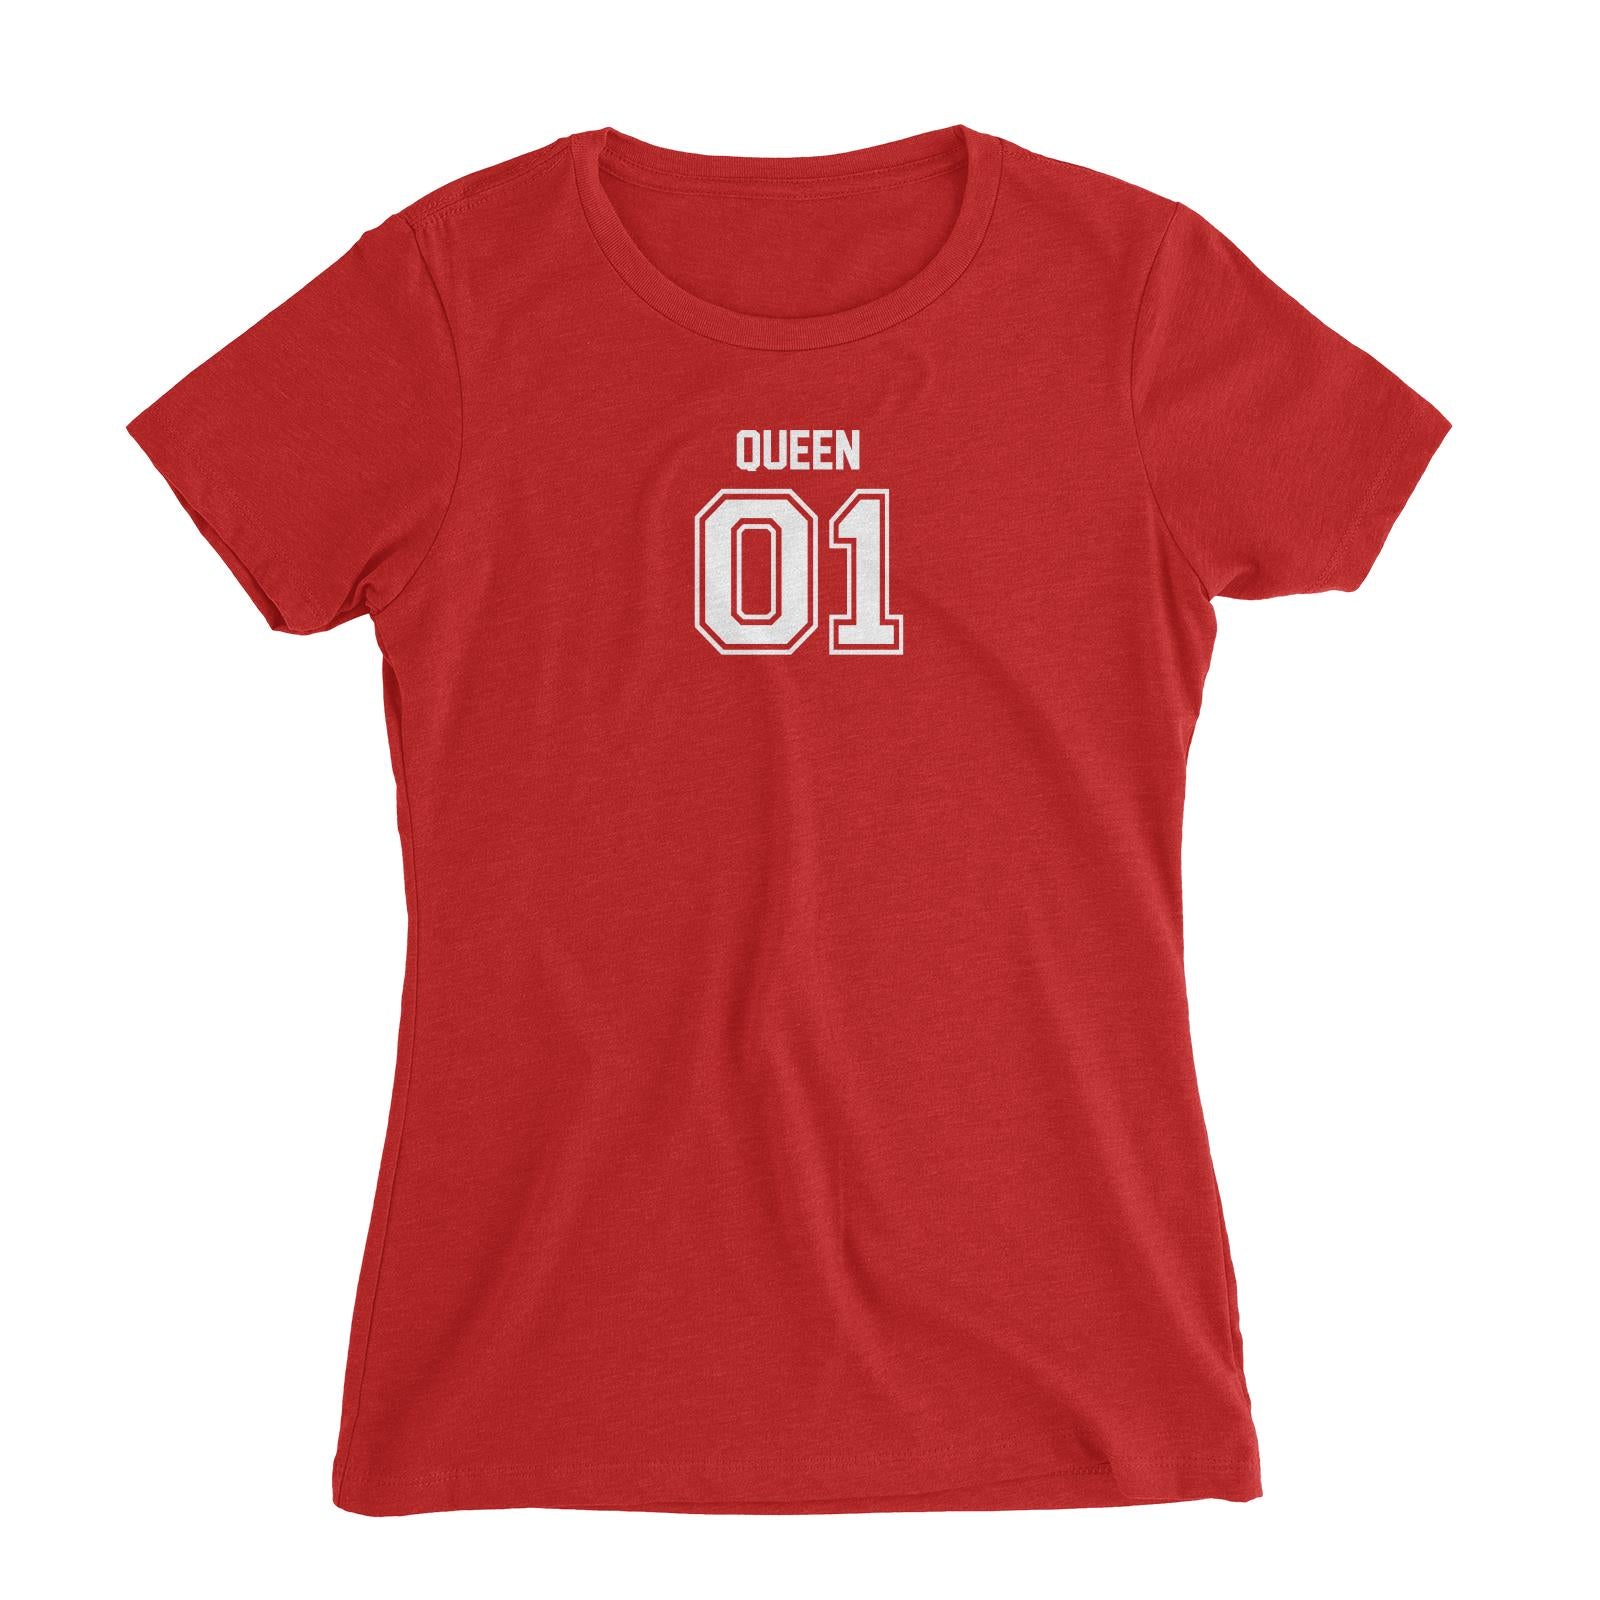 Jersey Adults Queen 01 Single Side Women's Slim Fit T-Shirt